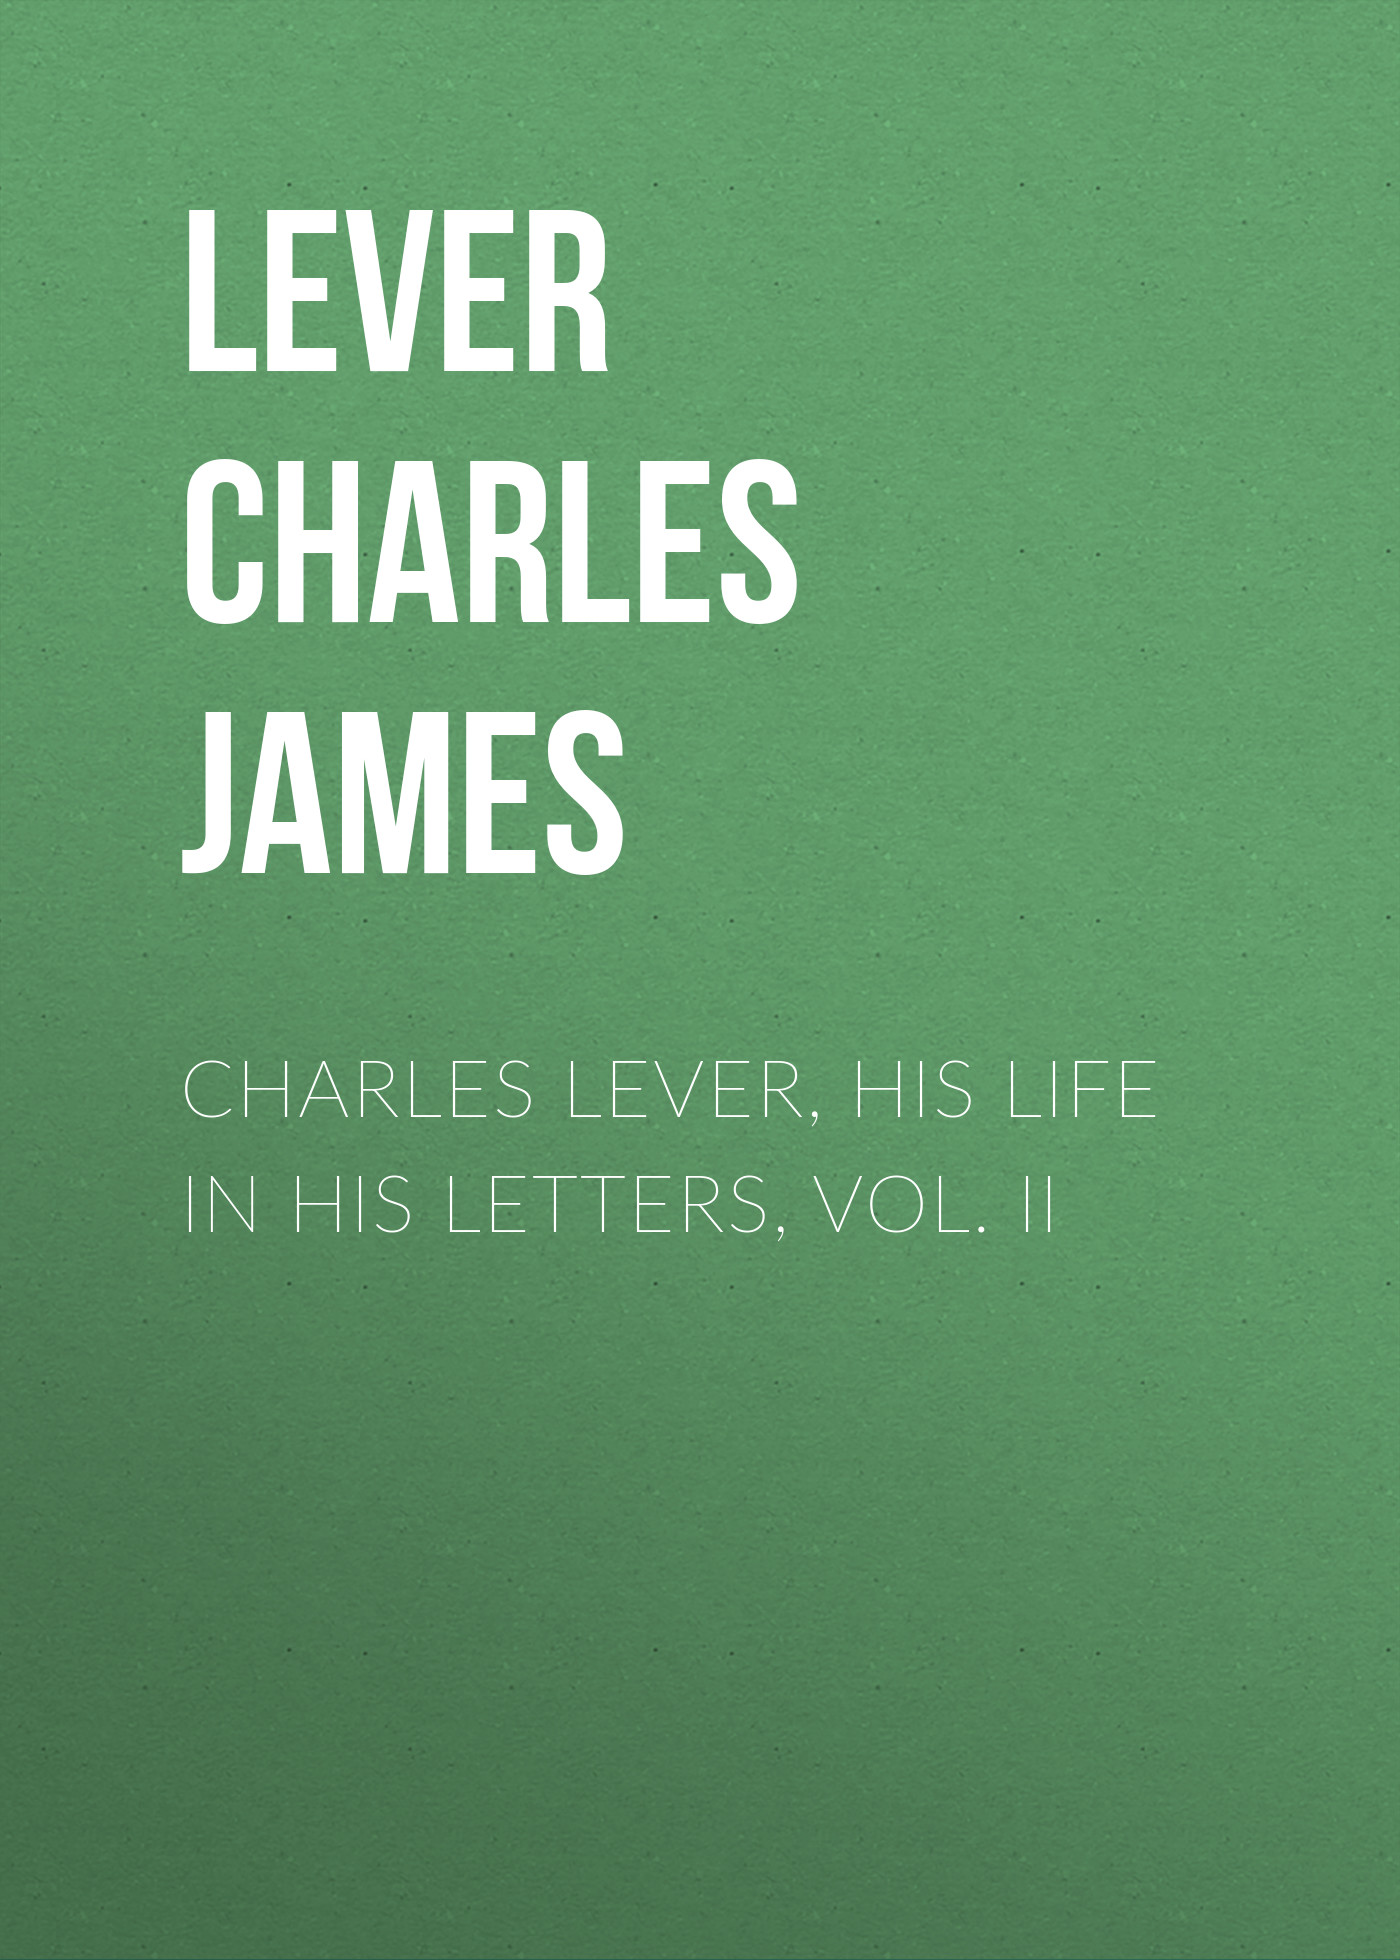 Книга Charles Lever, His Life in His Letters, Vol. II из серии , созданная Charles Lever, может относится к жанру Зарубежная старинная литература, Зарубежная классика. Стоимость электронной книги Charles Lever, His Life in His Letters, Vol. II с идентификатором 25448436 составляет 0 руб.